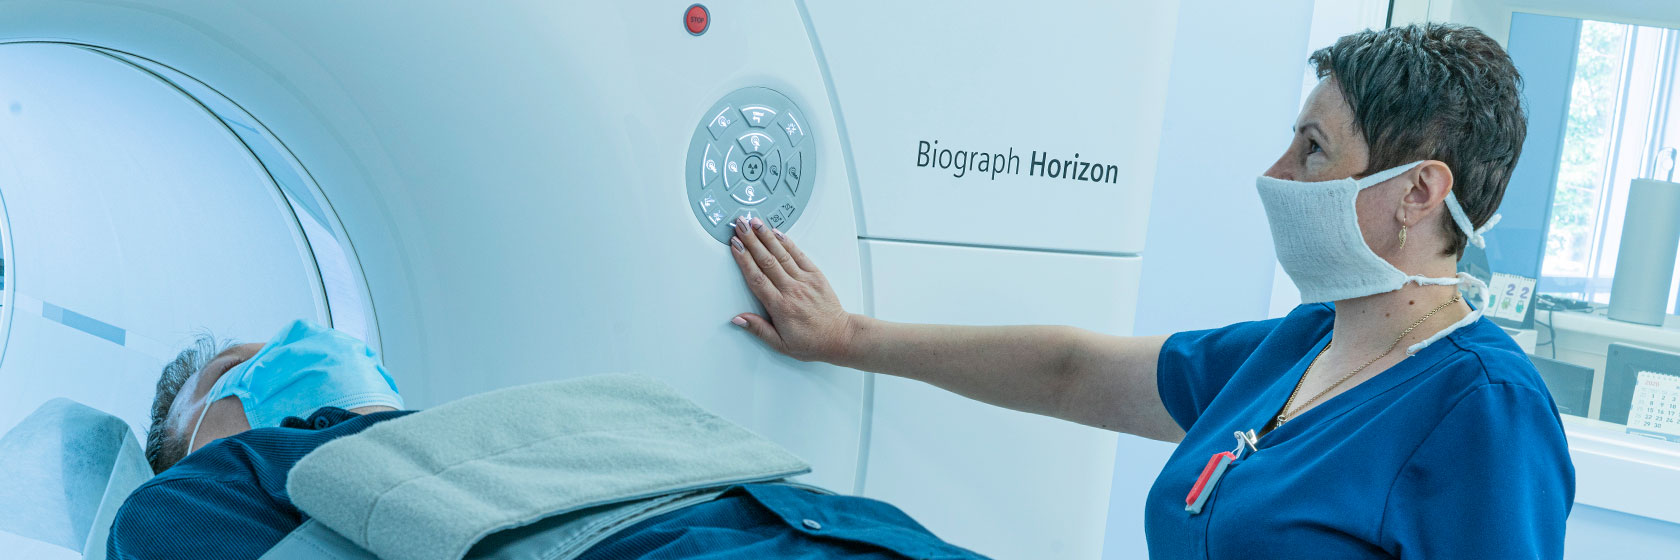 Оператор уложила пациента в аппарат КТ для процедуры компьютерной томографии